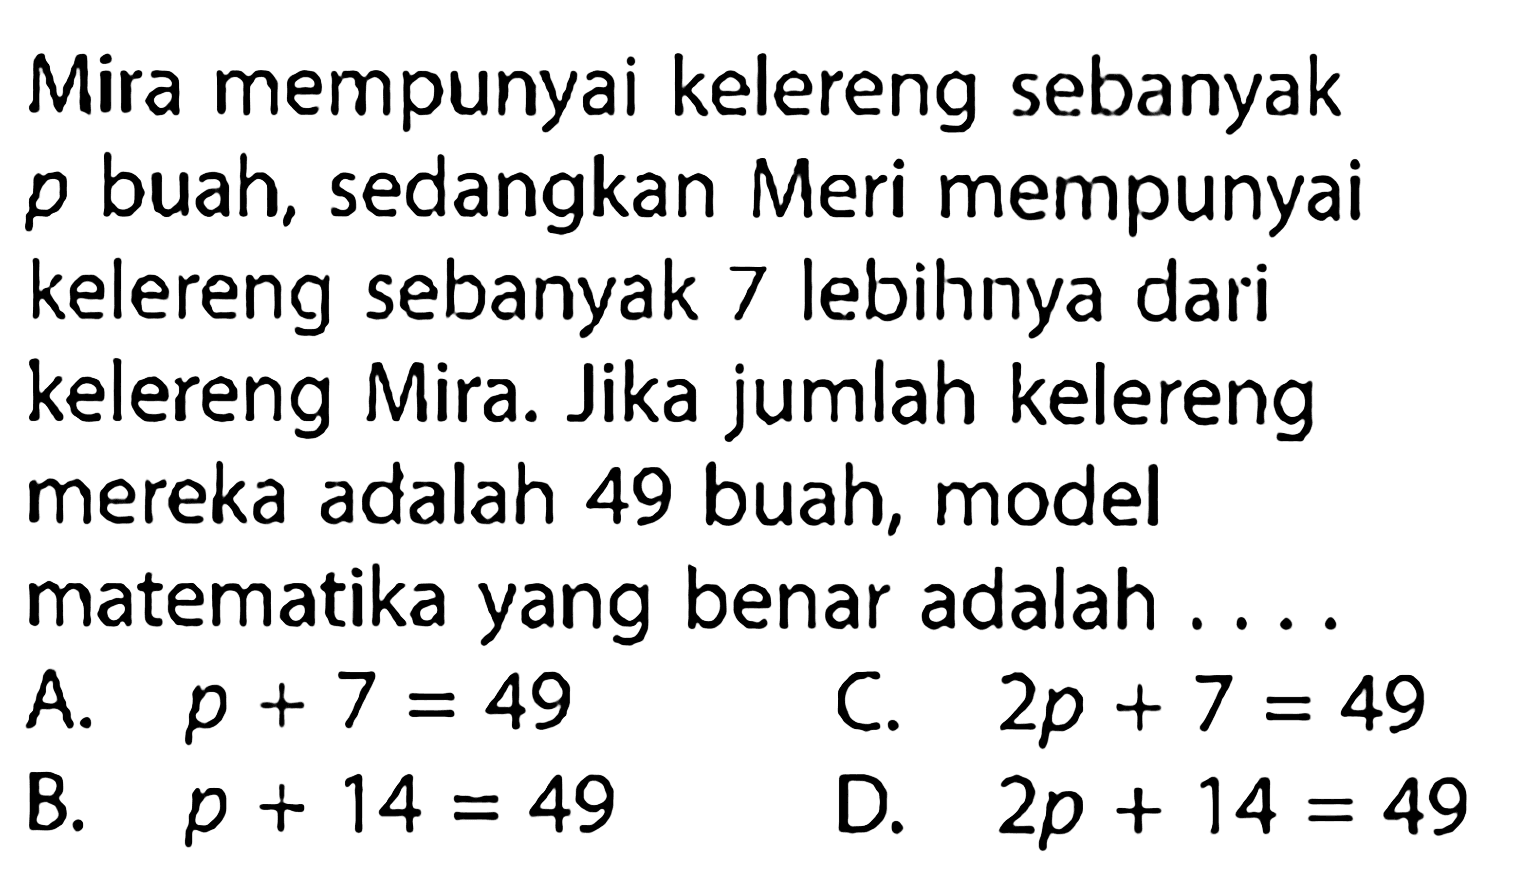 Mira mempunyai kelereng sebanyak p buah, sedangkan Meri mempunyai kelereng sebanyak 7 lebihnya dari kelereng Mira. Jika jumlah kelereng mereka adalah 49 buah, model matematika yang benar adalah . . . .